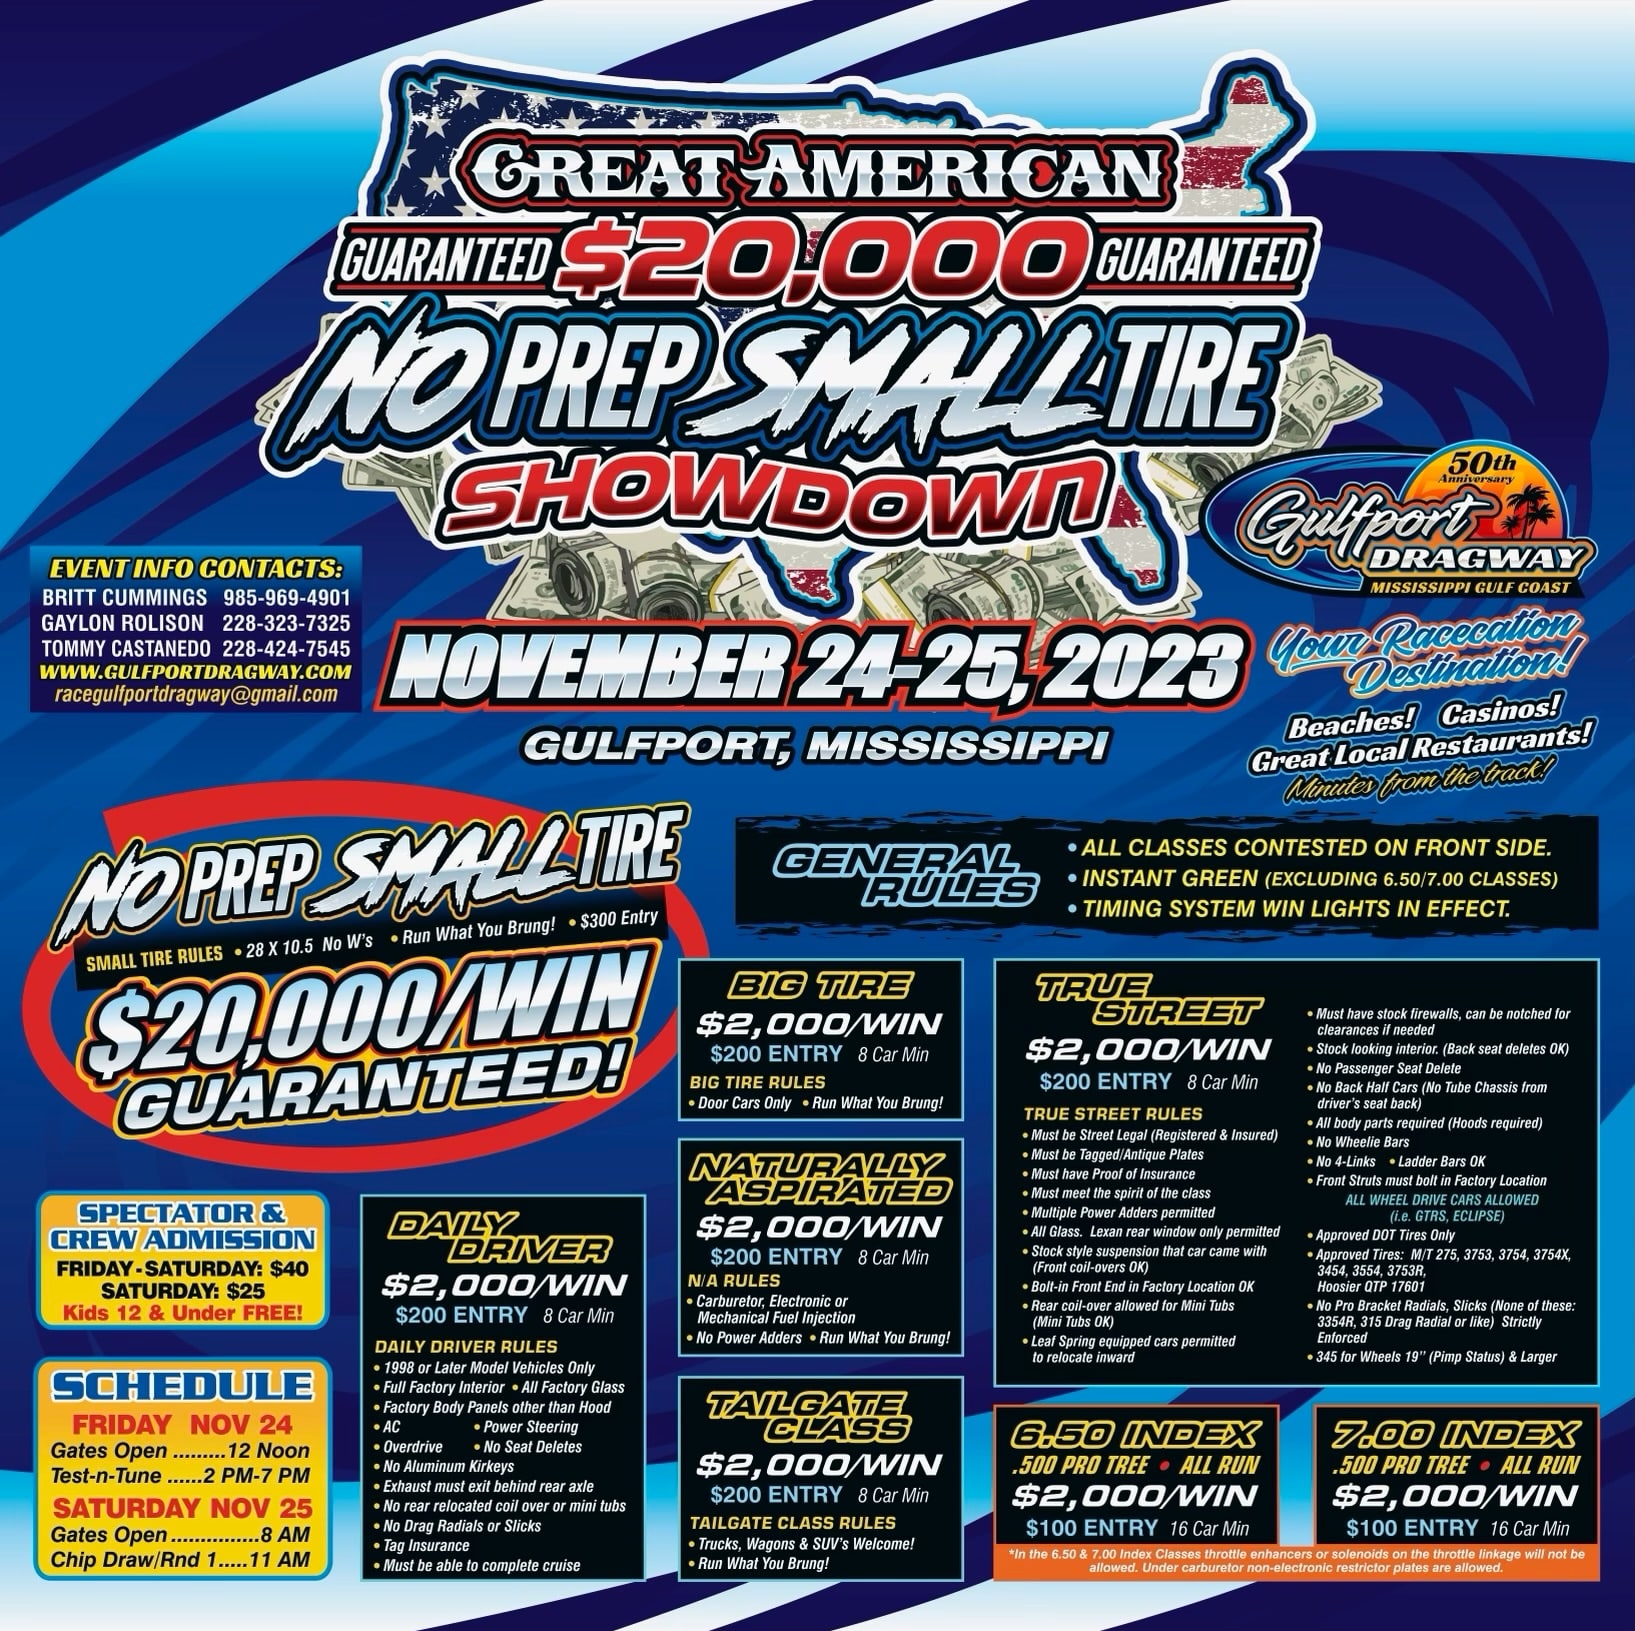 The Great American GUARANTEED $20,000.00 NO Prep SMALL Tire Showdown